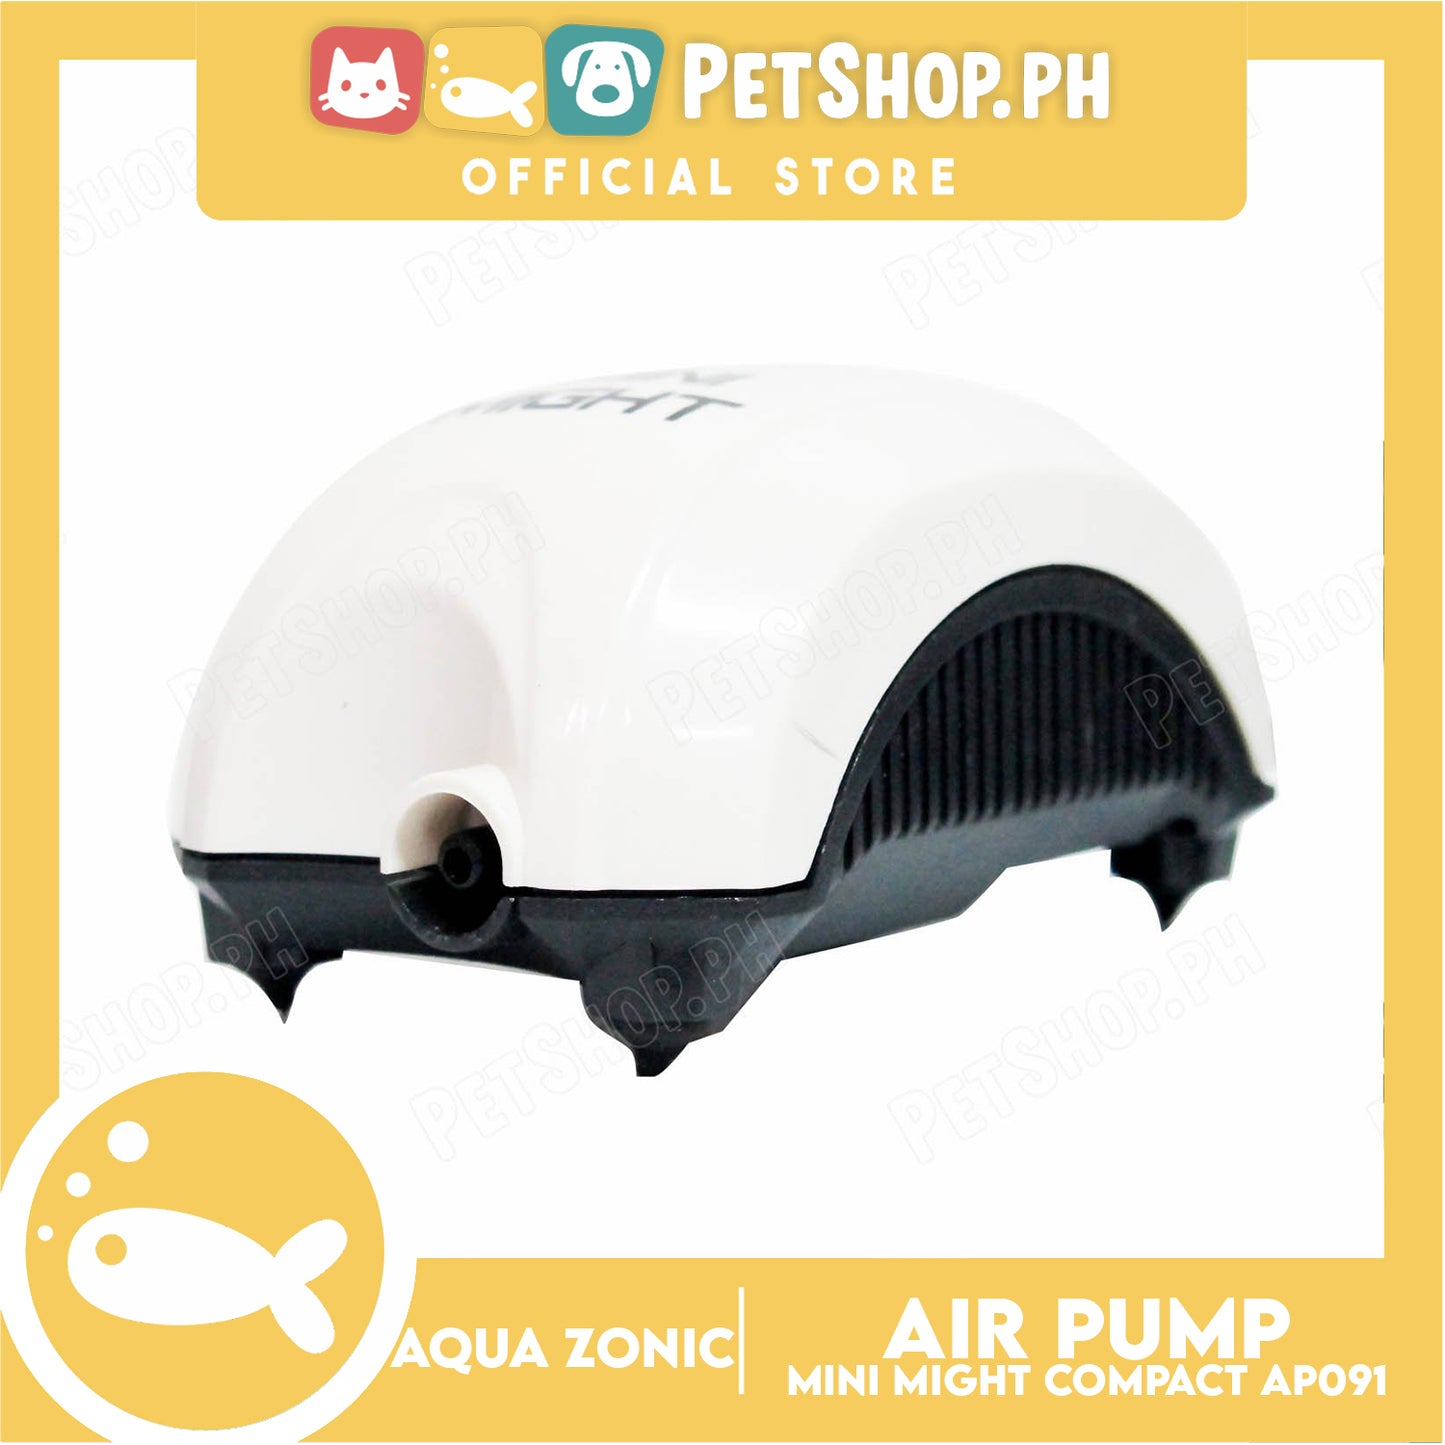 Aqua Zonic Mini Might Compact Aquarium Air Pump